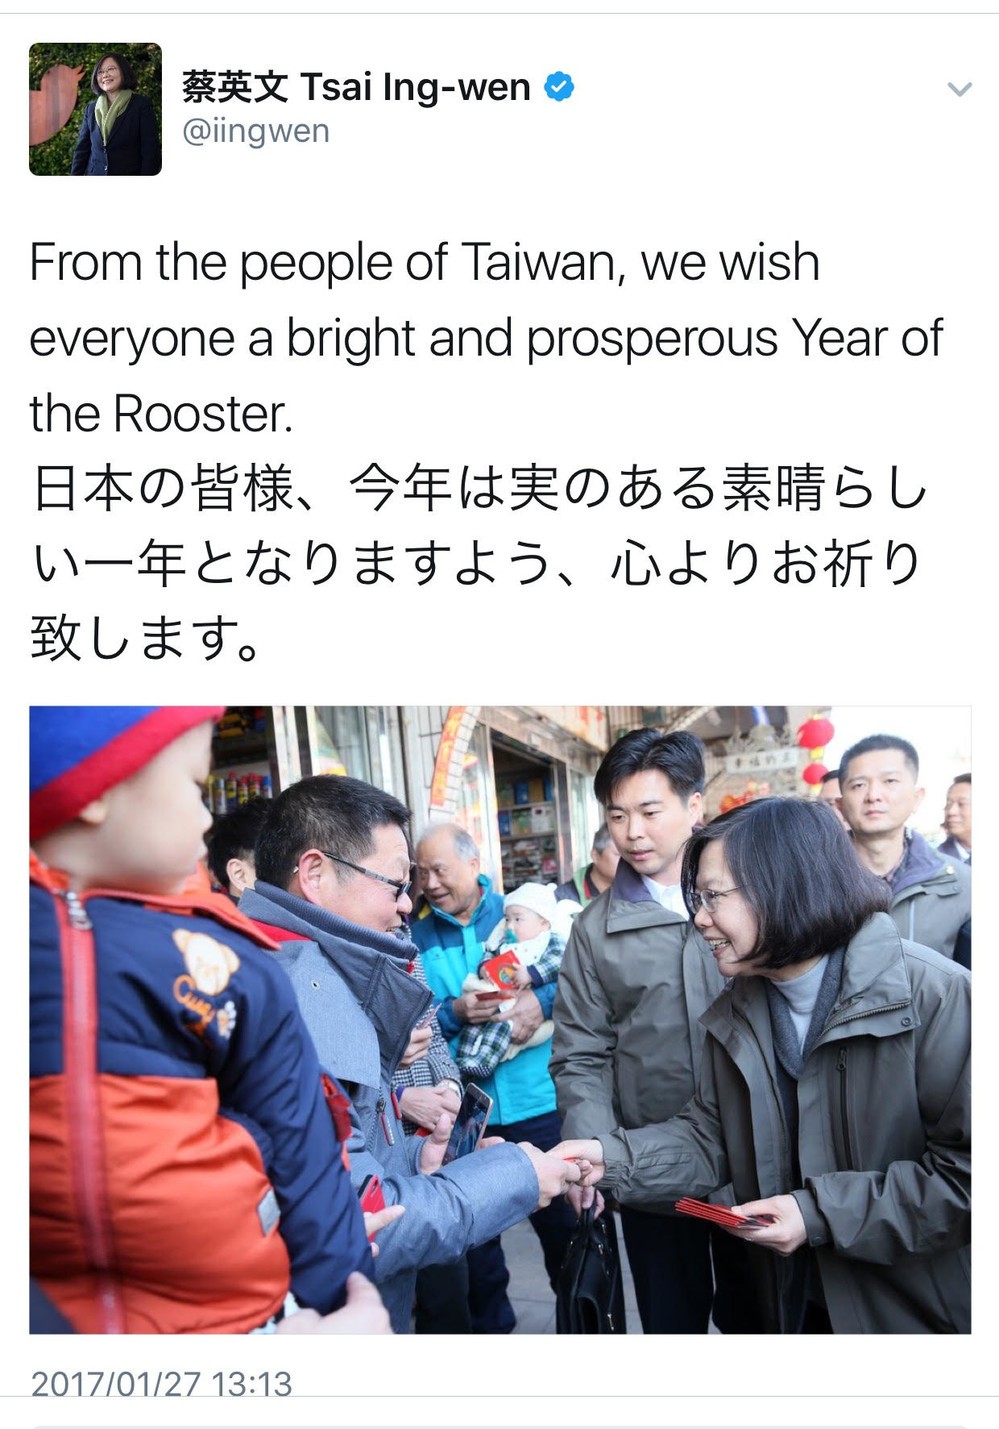 台湾の蔡英文総統のツイート。英語と日本語で旧正月のあいさつをしている
